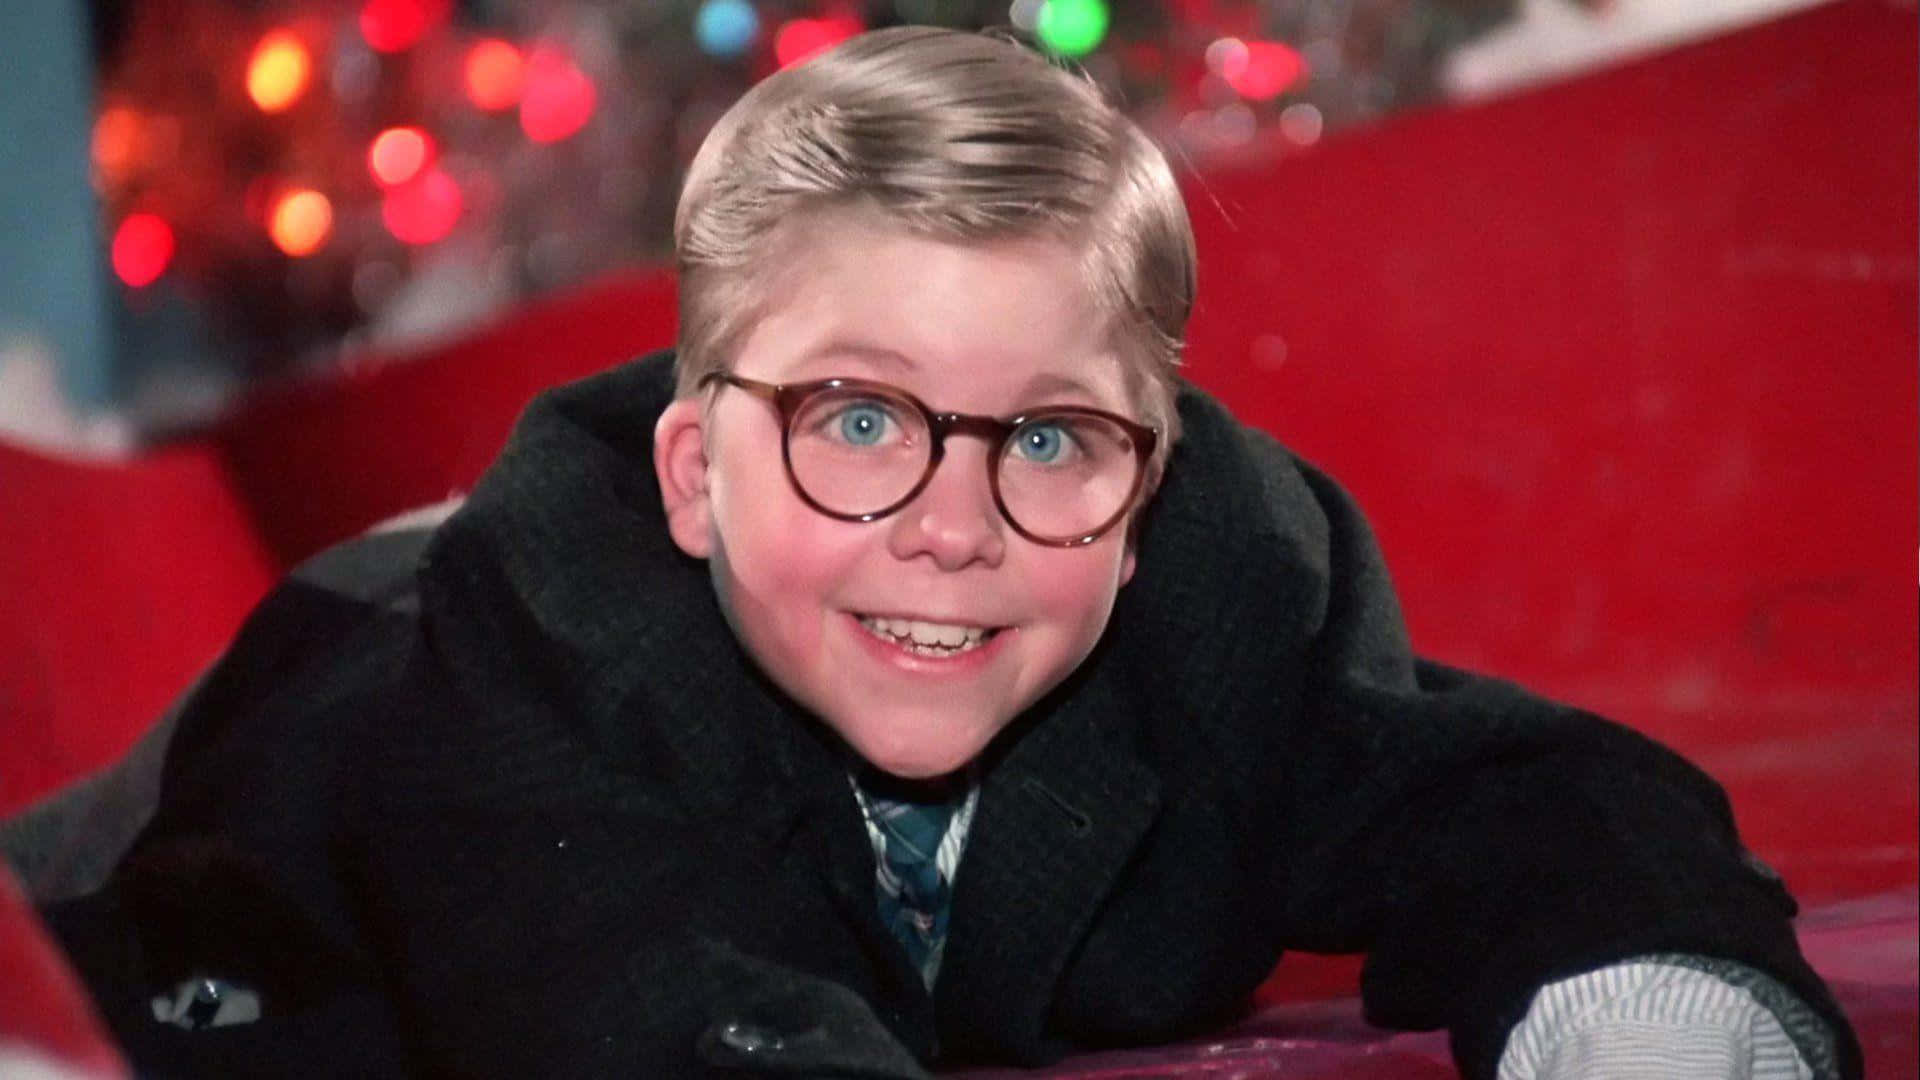 Einjunger Junge Mit Brille Liegt Auf Einem Weihnachtsbaum. Wallpaper